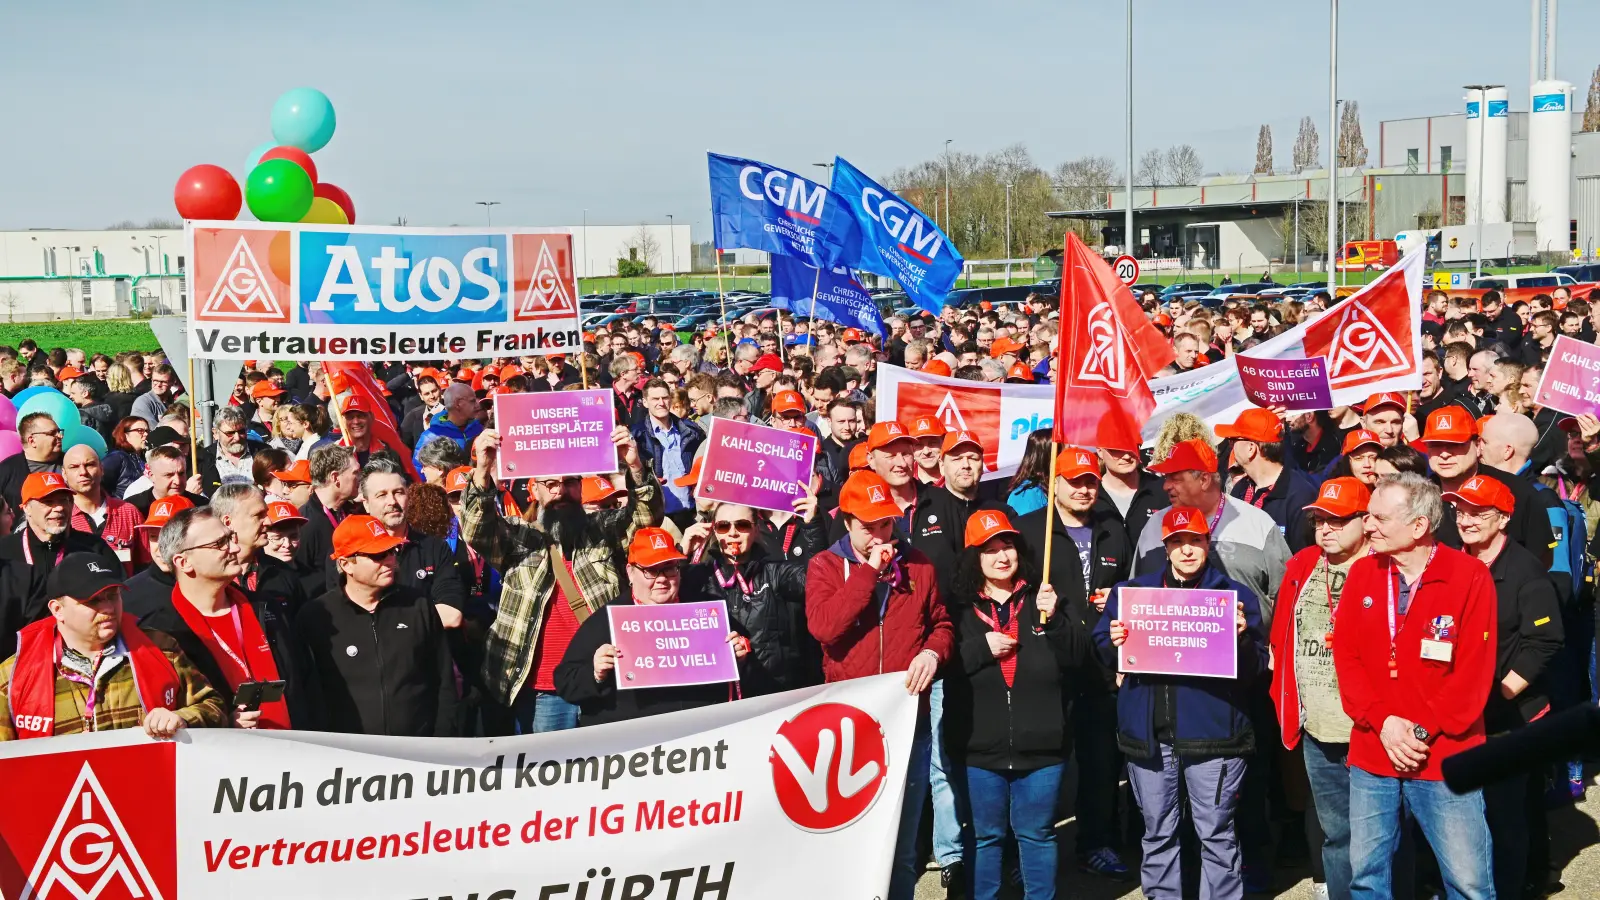 Über 1000 Mitarbeiter demonstrierten bei der Kundgebung vor den Bosch-Werkstoren. Auch viele Delegationen von anderen Industriebetrieben nahmen teil. (Foto: Anna Beigel)